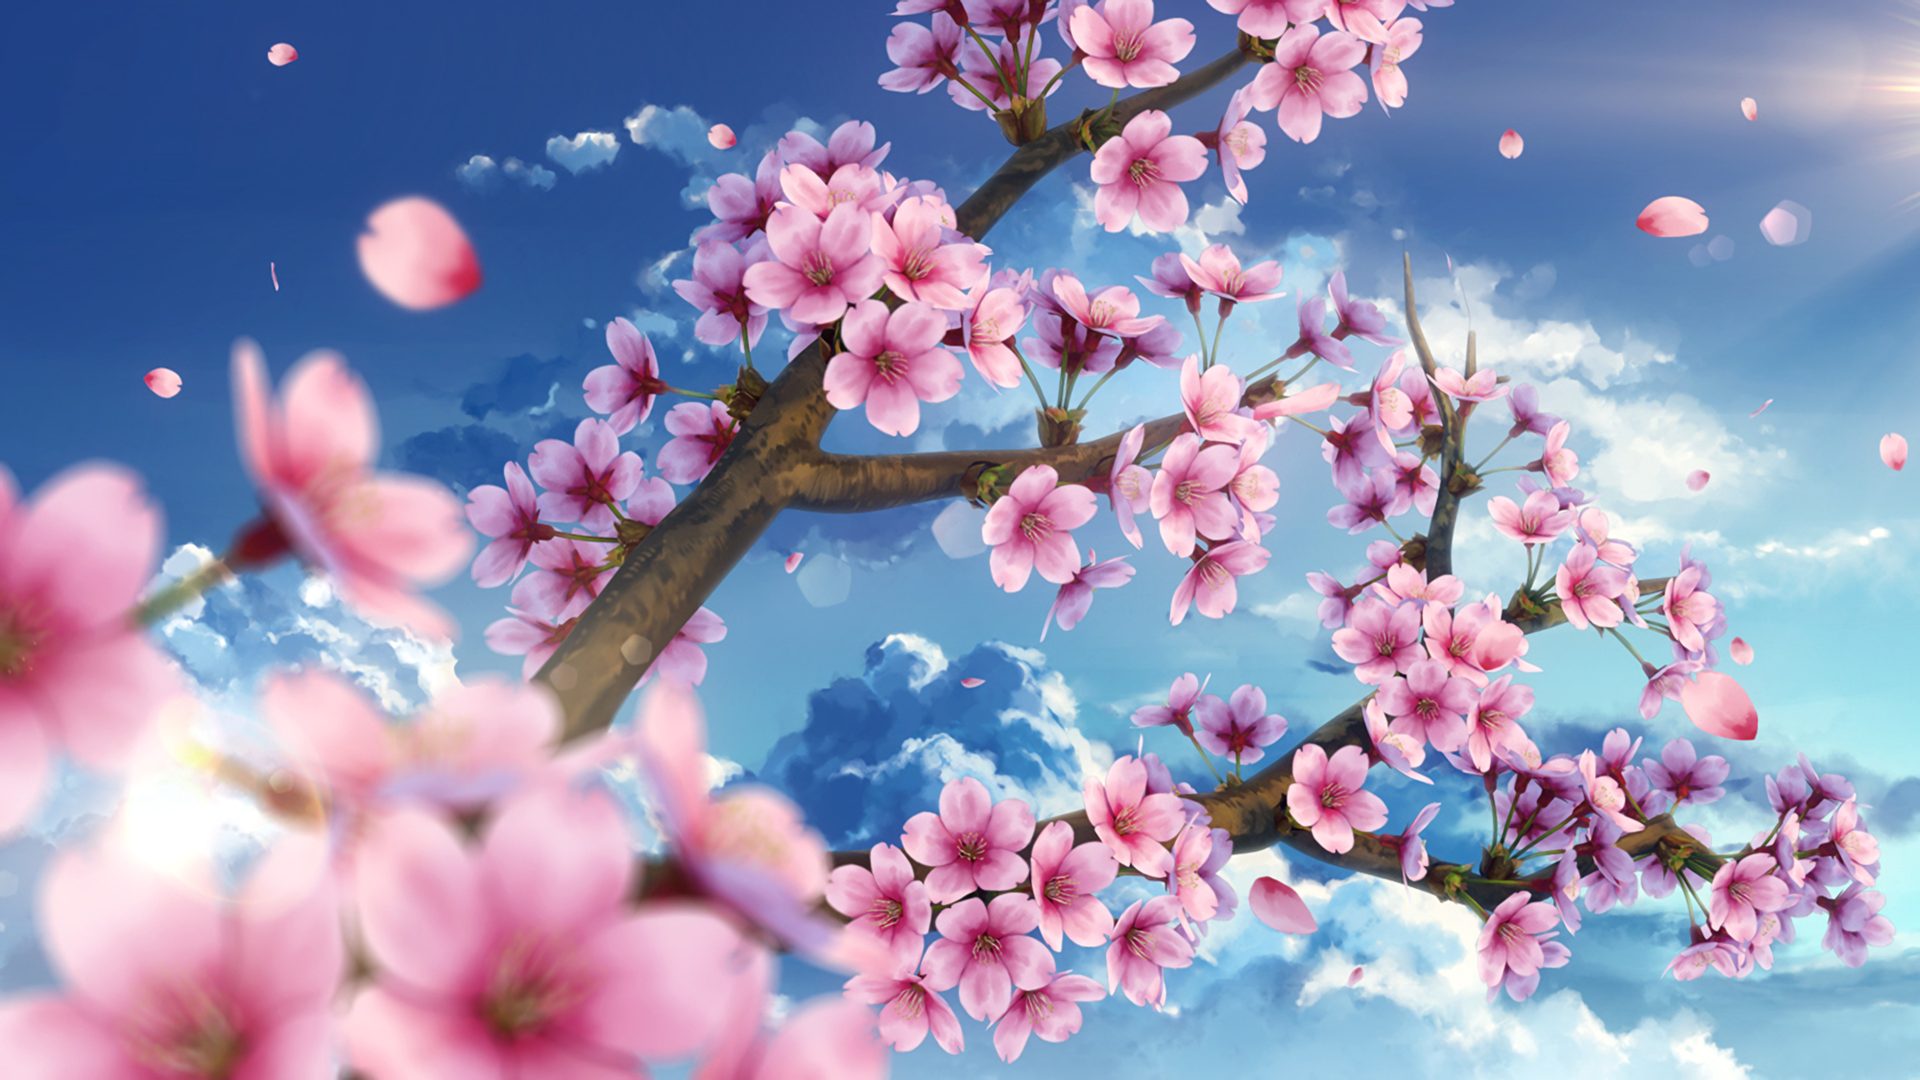 Hình nền  phong cảnh Anime Bầu trời mùa đông chi nhánh nhà ở  Vocaloid Hatsune Miku Hoa anh đào Mùa xuân cây thực vật 1920x1080 px Hình  nền máy tính khu